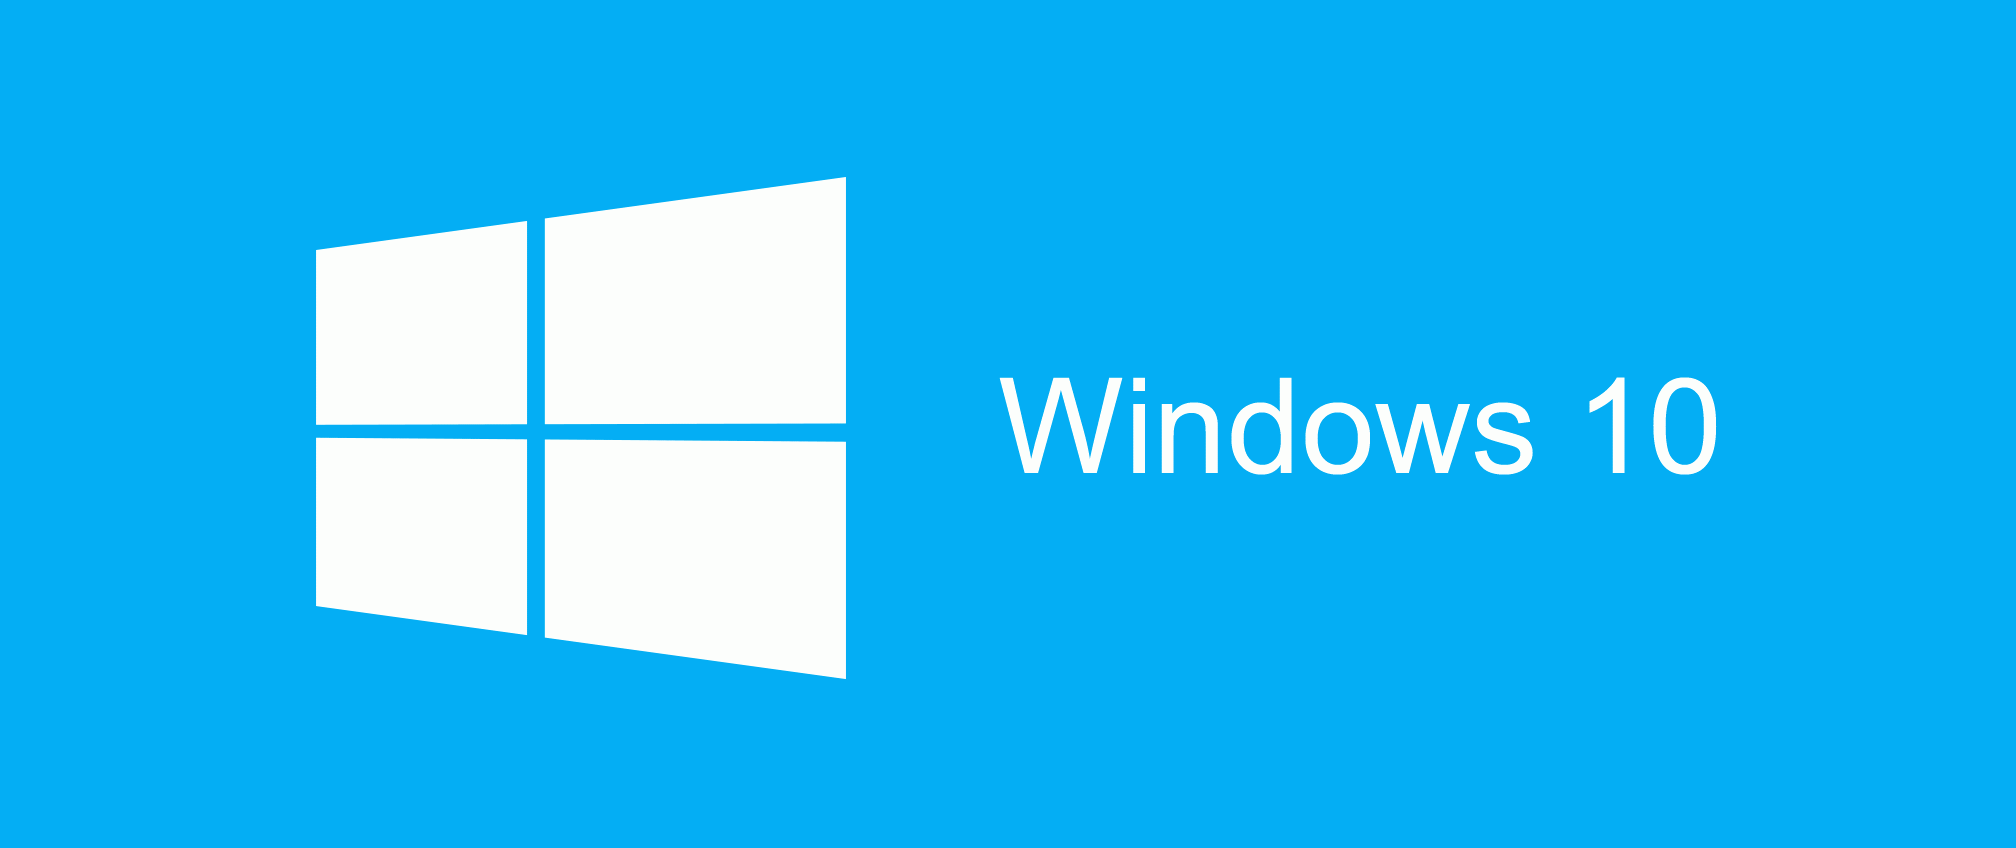 Windows Logo - windows-10-logo - Case Financial